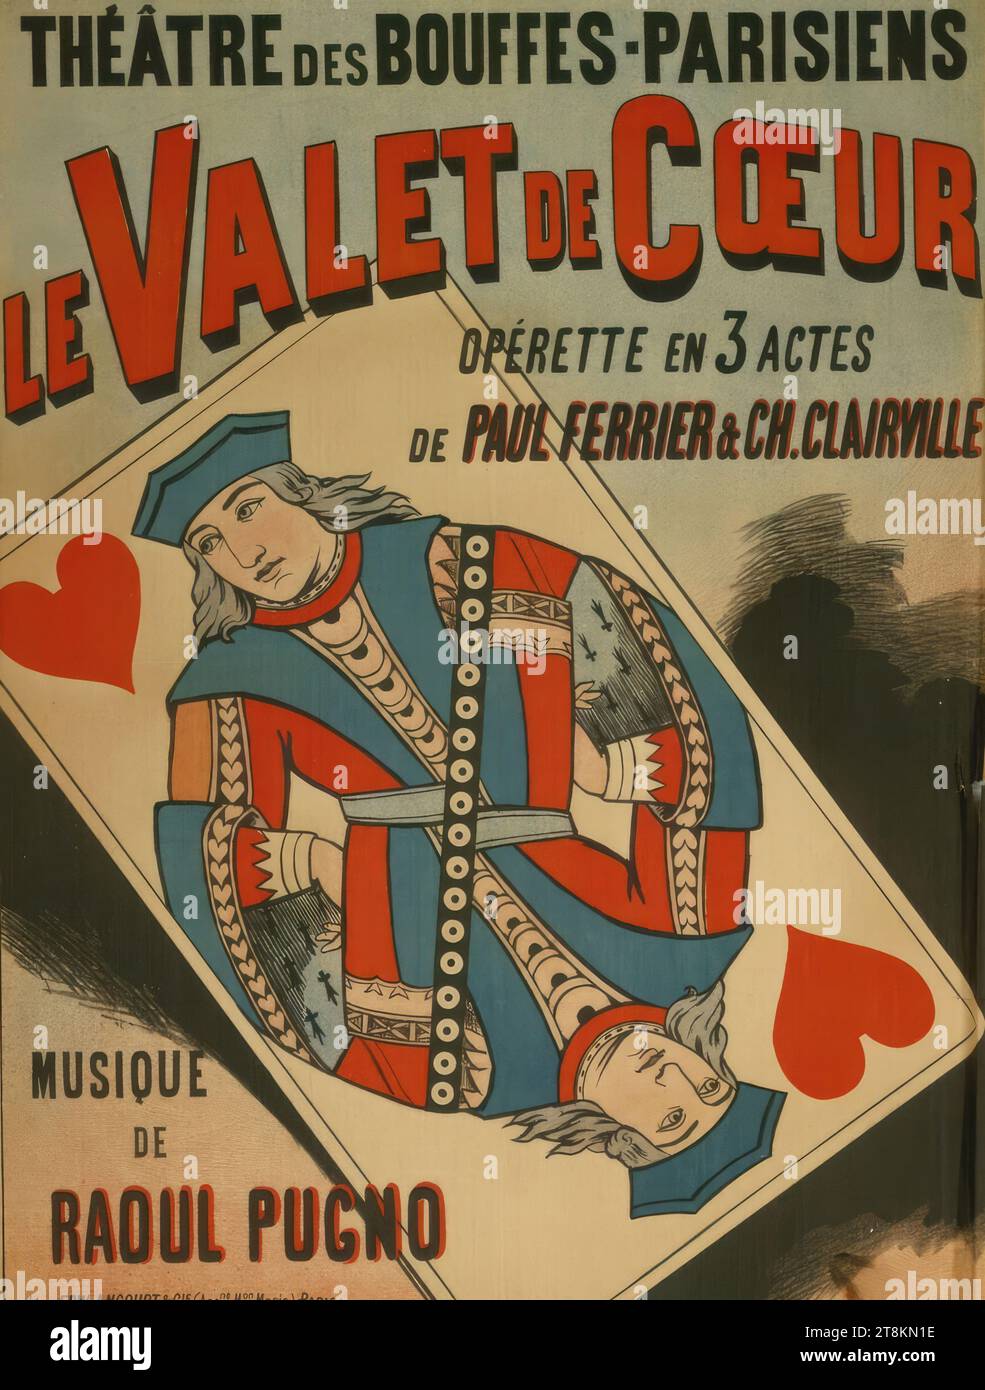 THÉÂTRE DES BOUFFES-PARISIENS; LE VALET DE COEUR; MUSIQUE DE RAOUL PUGNO, Anonymous, around 1900, print, color lithograph, sheet: 810 mm x 620 mm Stock Photo